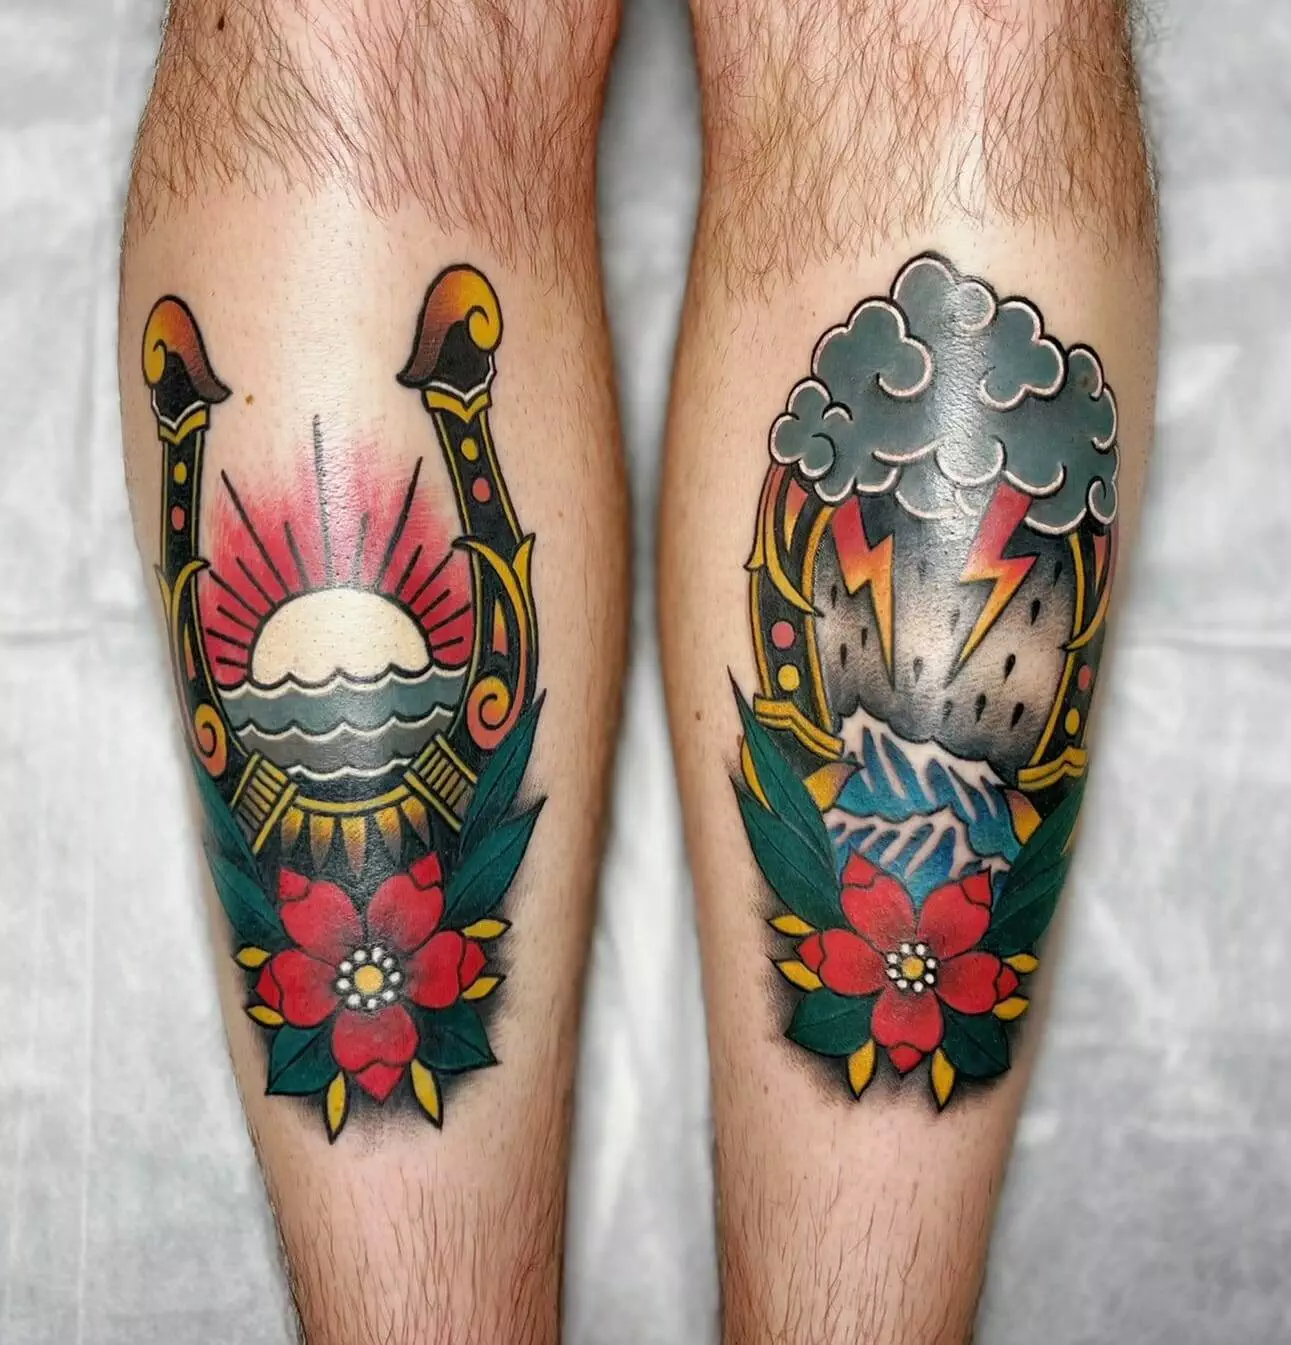 Tattooed legs.